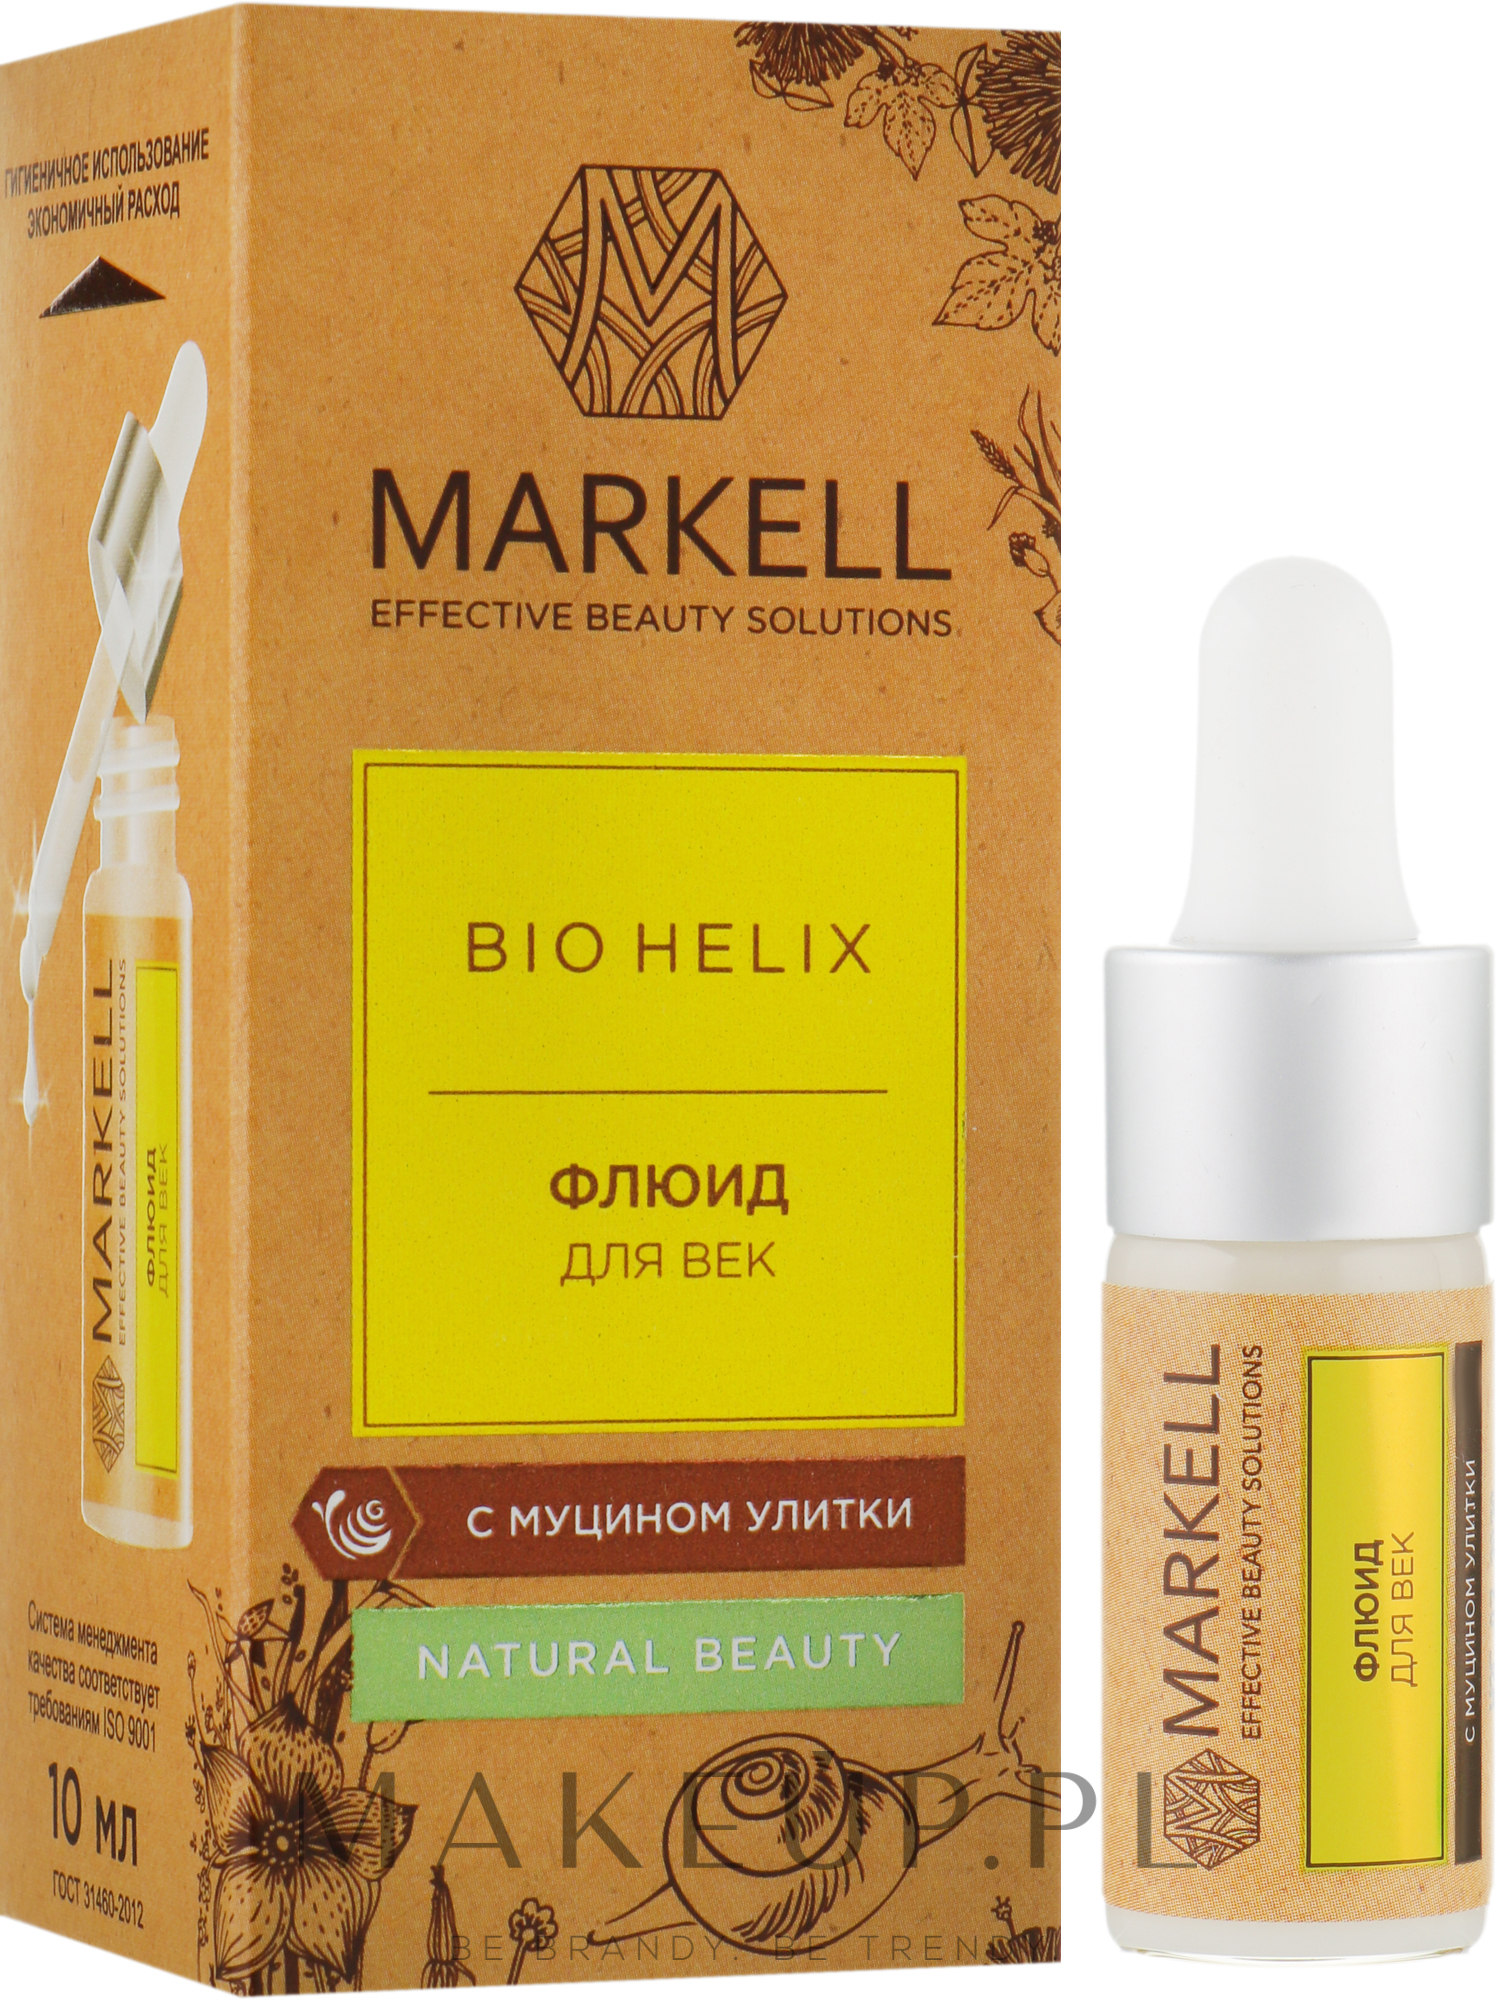 markell bio helix szampon opinie